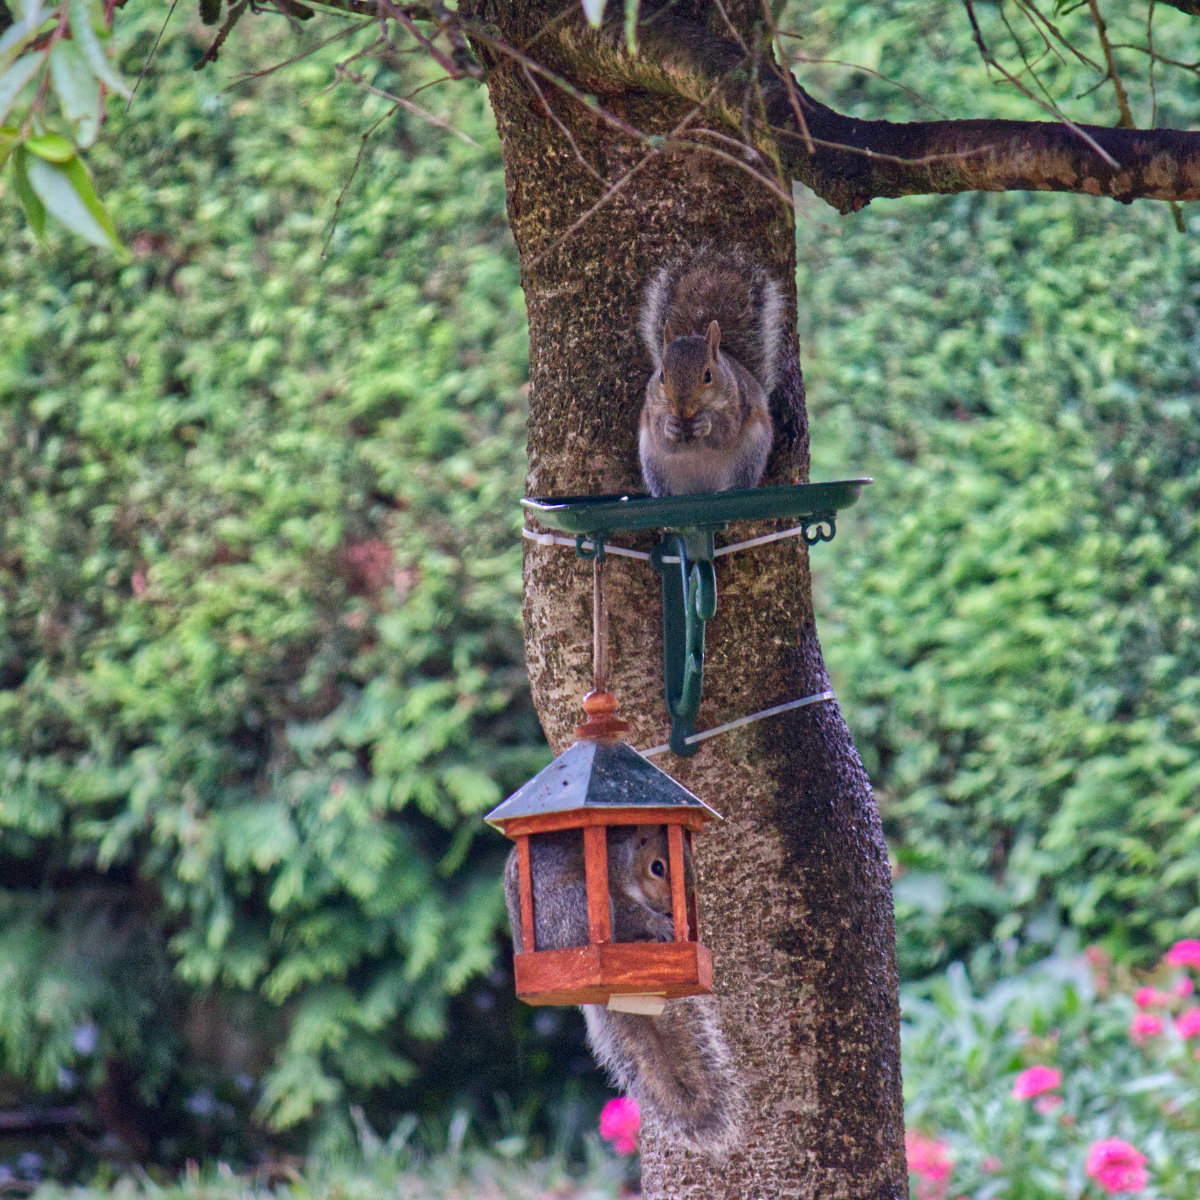 Two squirrels on bird feeding tables